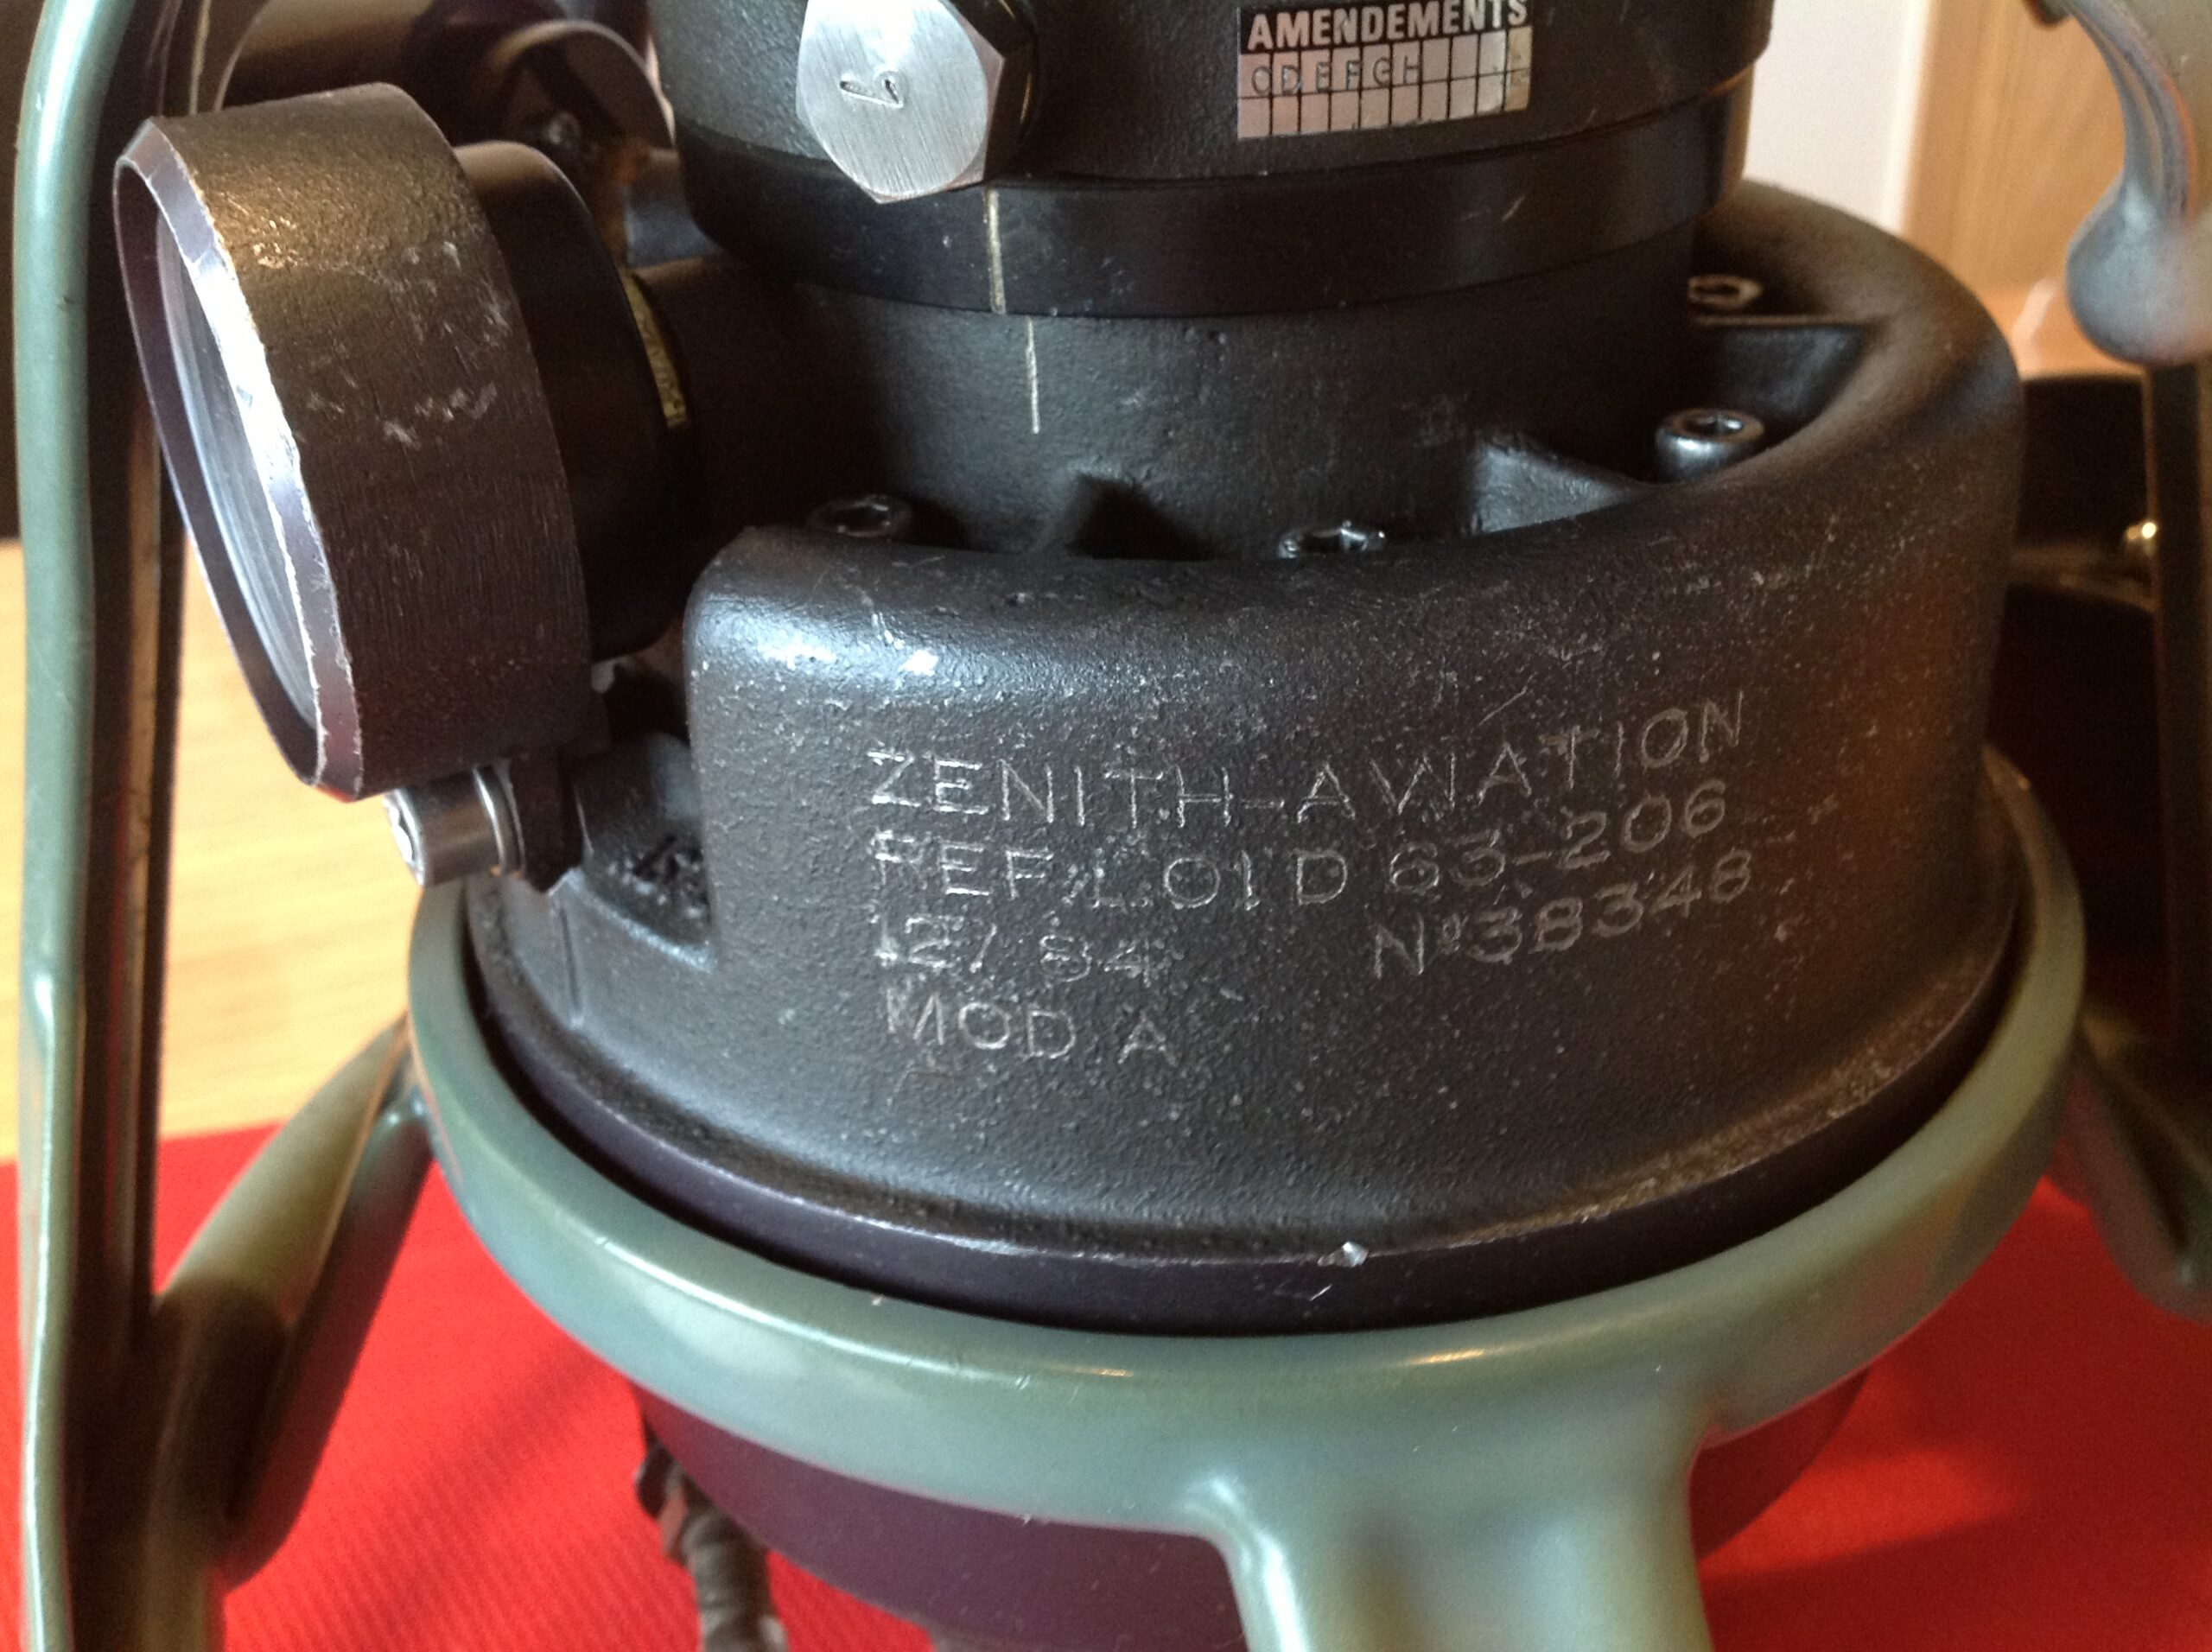 Zenith-Aviation Teil einer Betankungsanlage für Flugzeuge